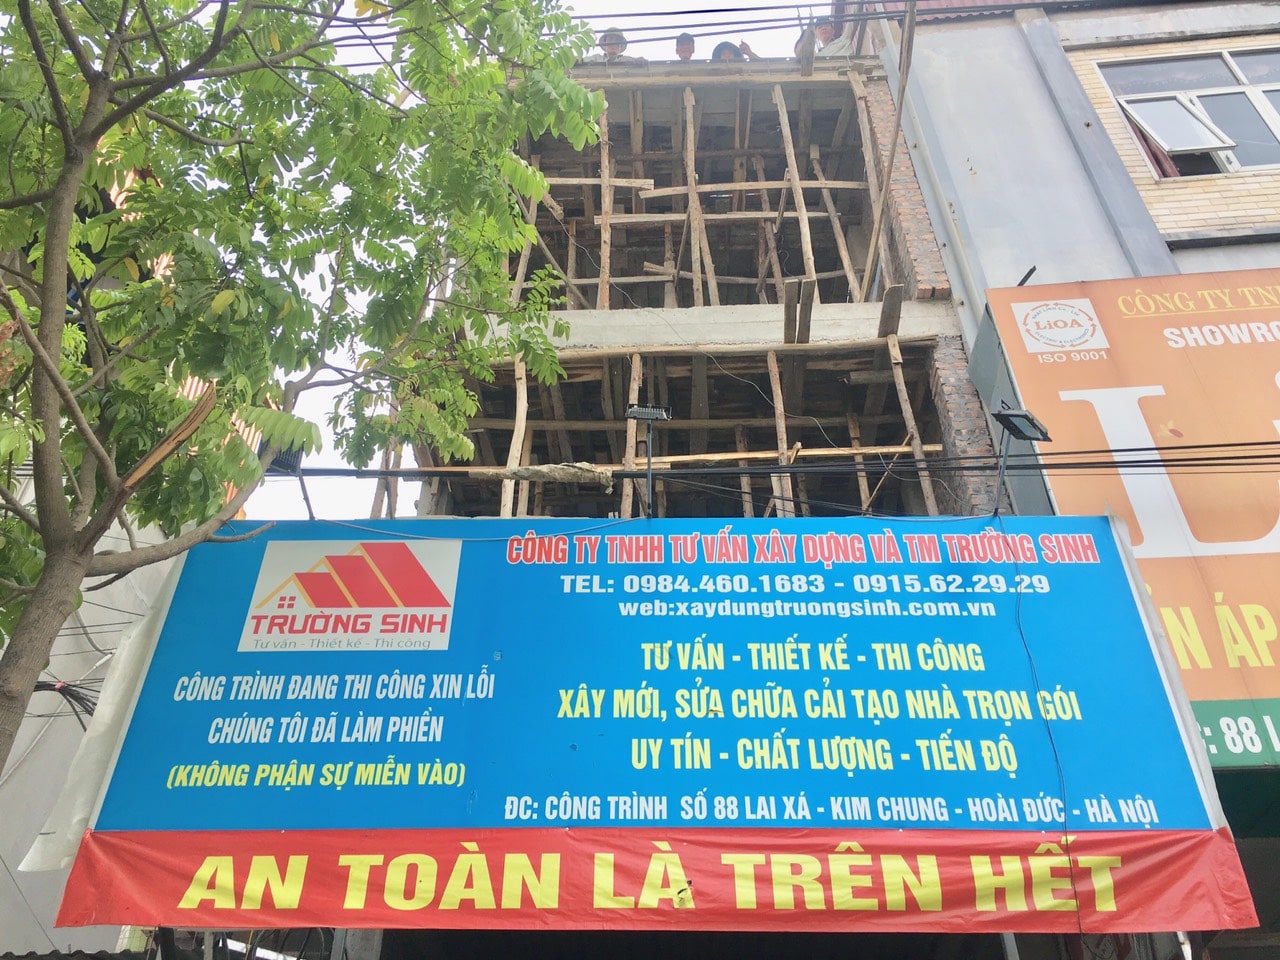 Báo giá xây nhà trọn gói tại Hà Nội năm 2020-xây dựng